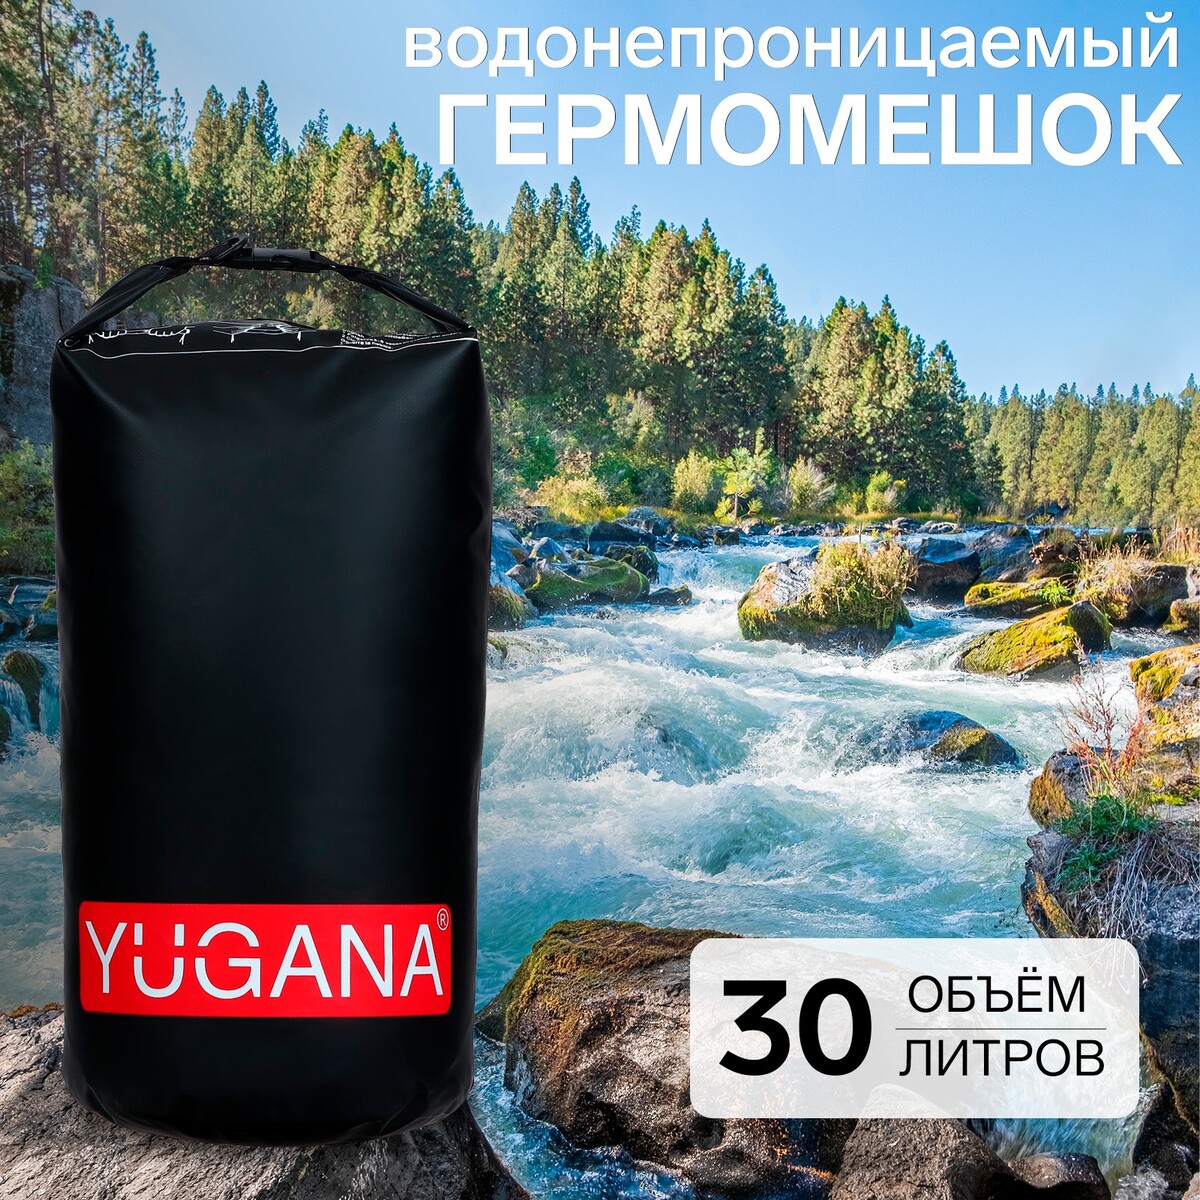 Гермомешок yugana, пвх, водонепроницаемый 30 литров, один ремень, черный